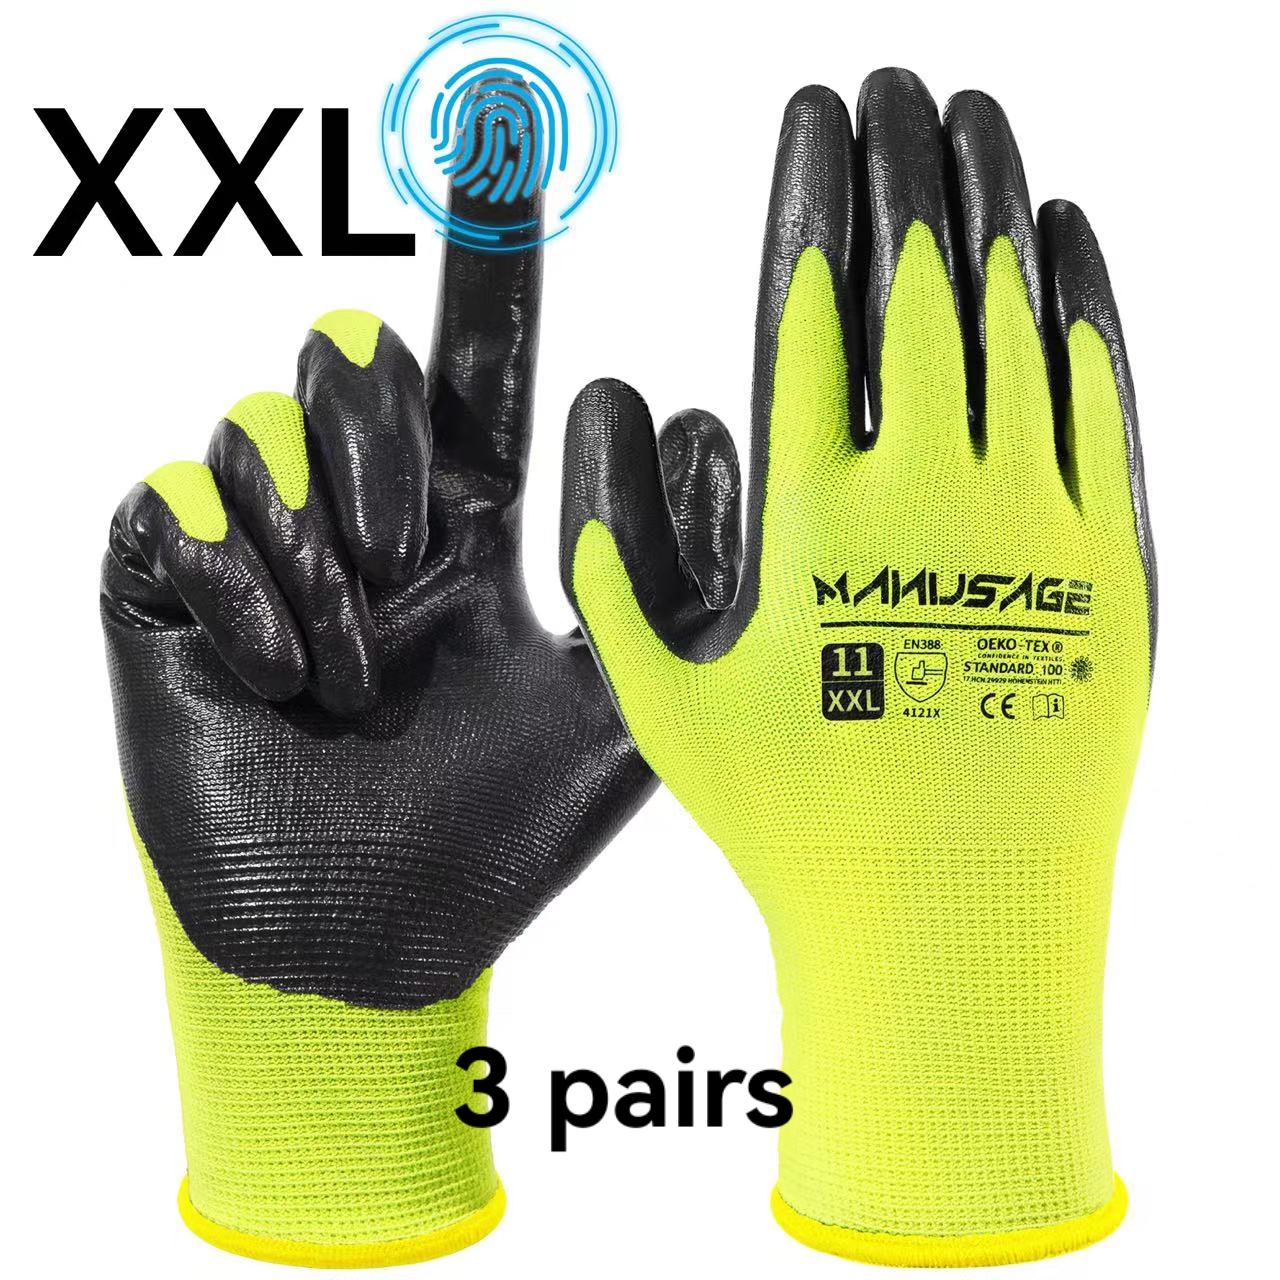 MANUSAGE Safety Work Gloves, Nitrile Work Gloves For Men and Women